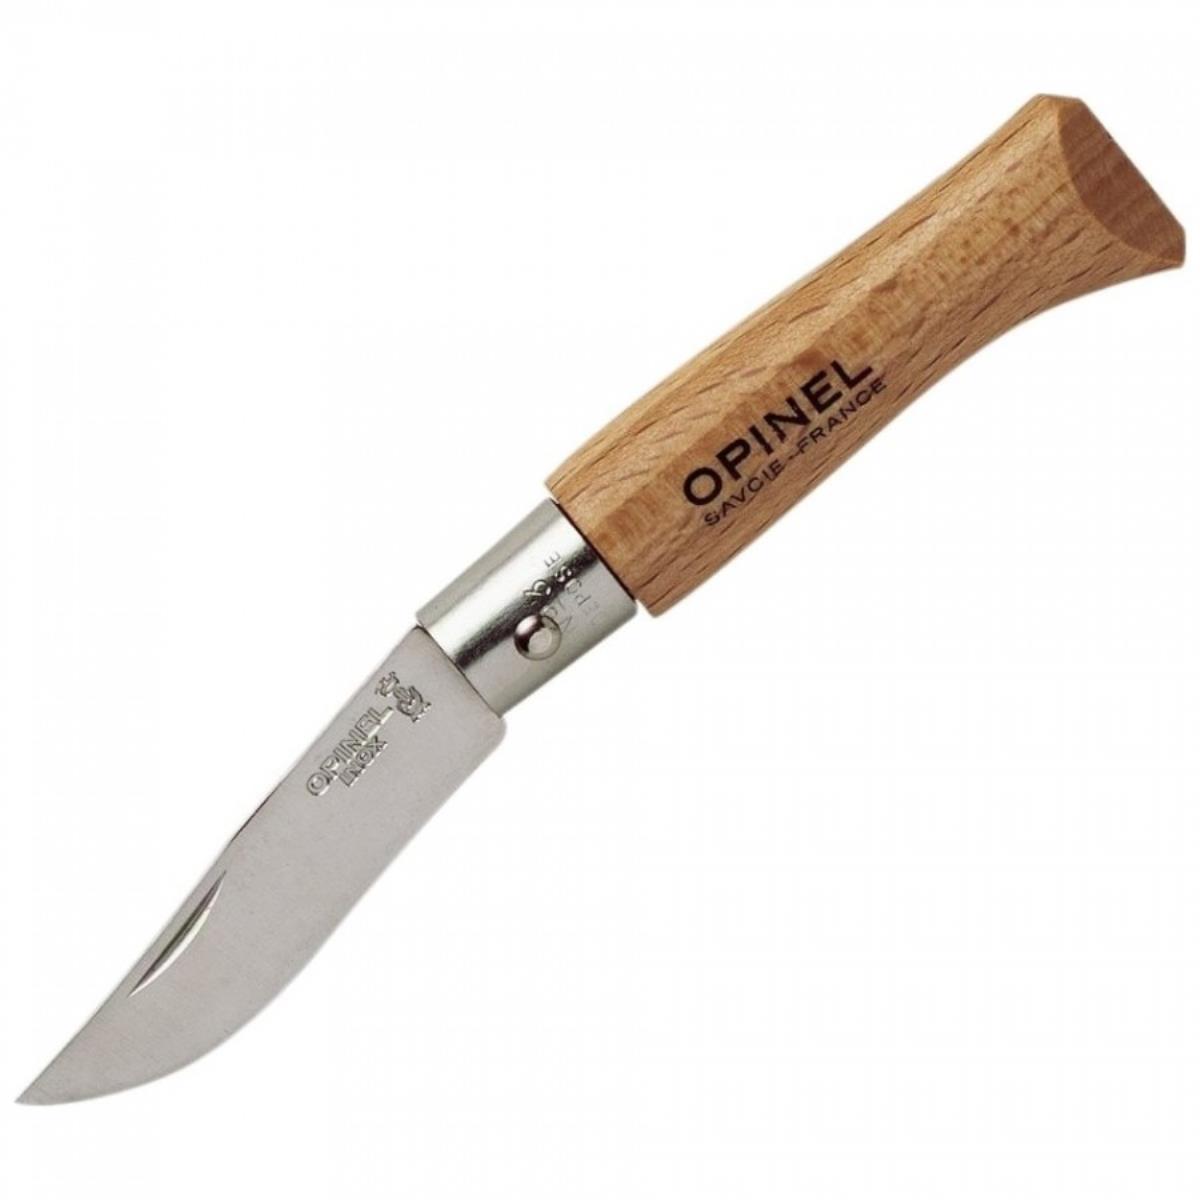 Нож складной №3 VRI Tradition Inox (нерж. сталь, рукоять бук, длина клинка 4 см) (0010712) OPINEL складной нож boker sherman damast сталь дамаск рукоять микарта